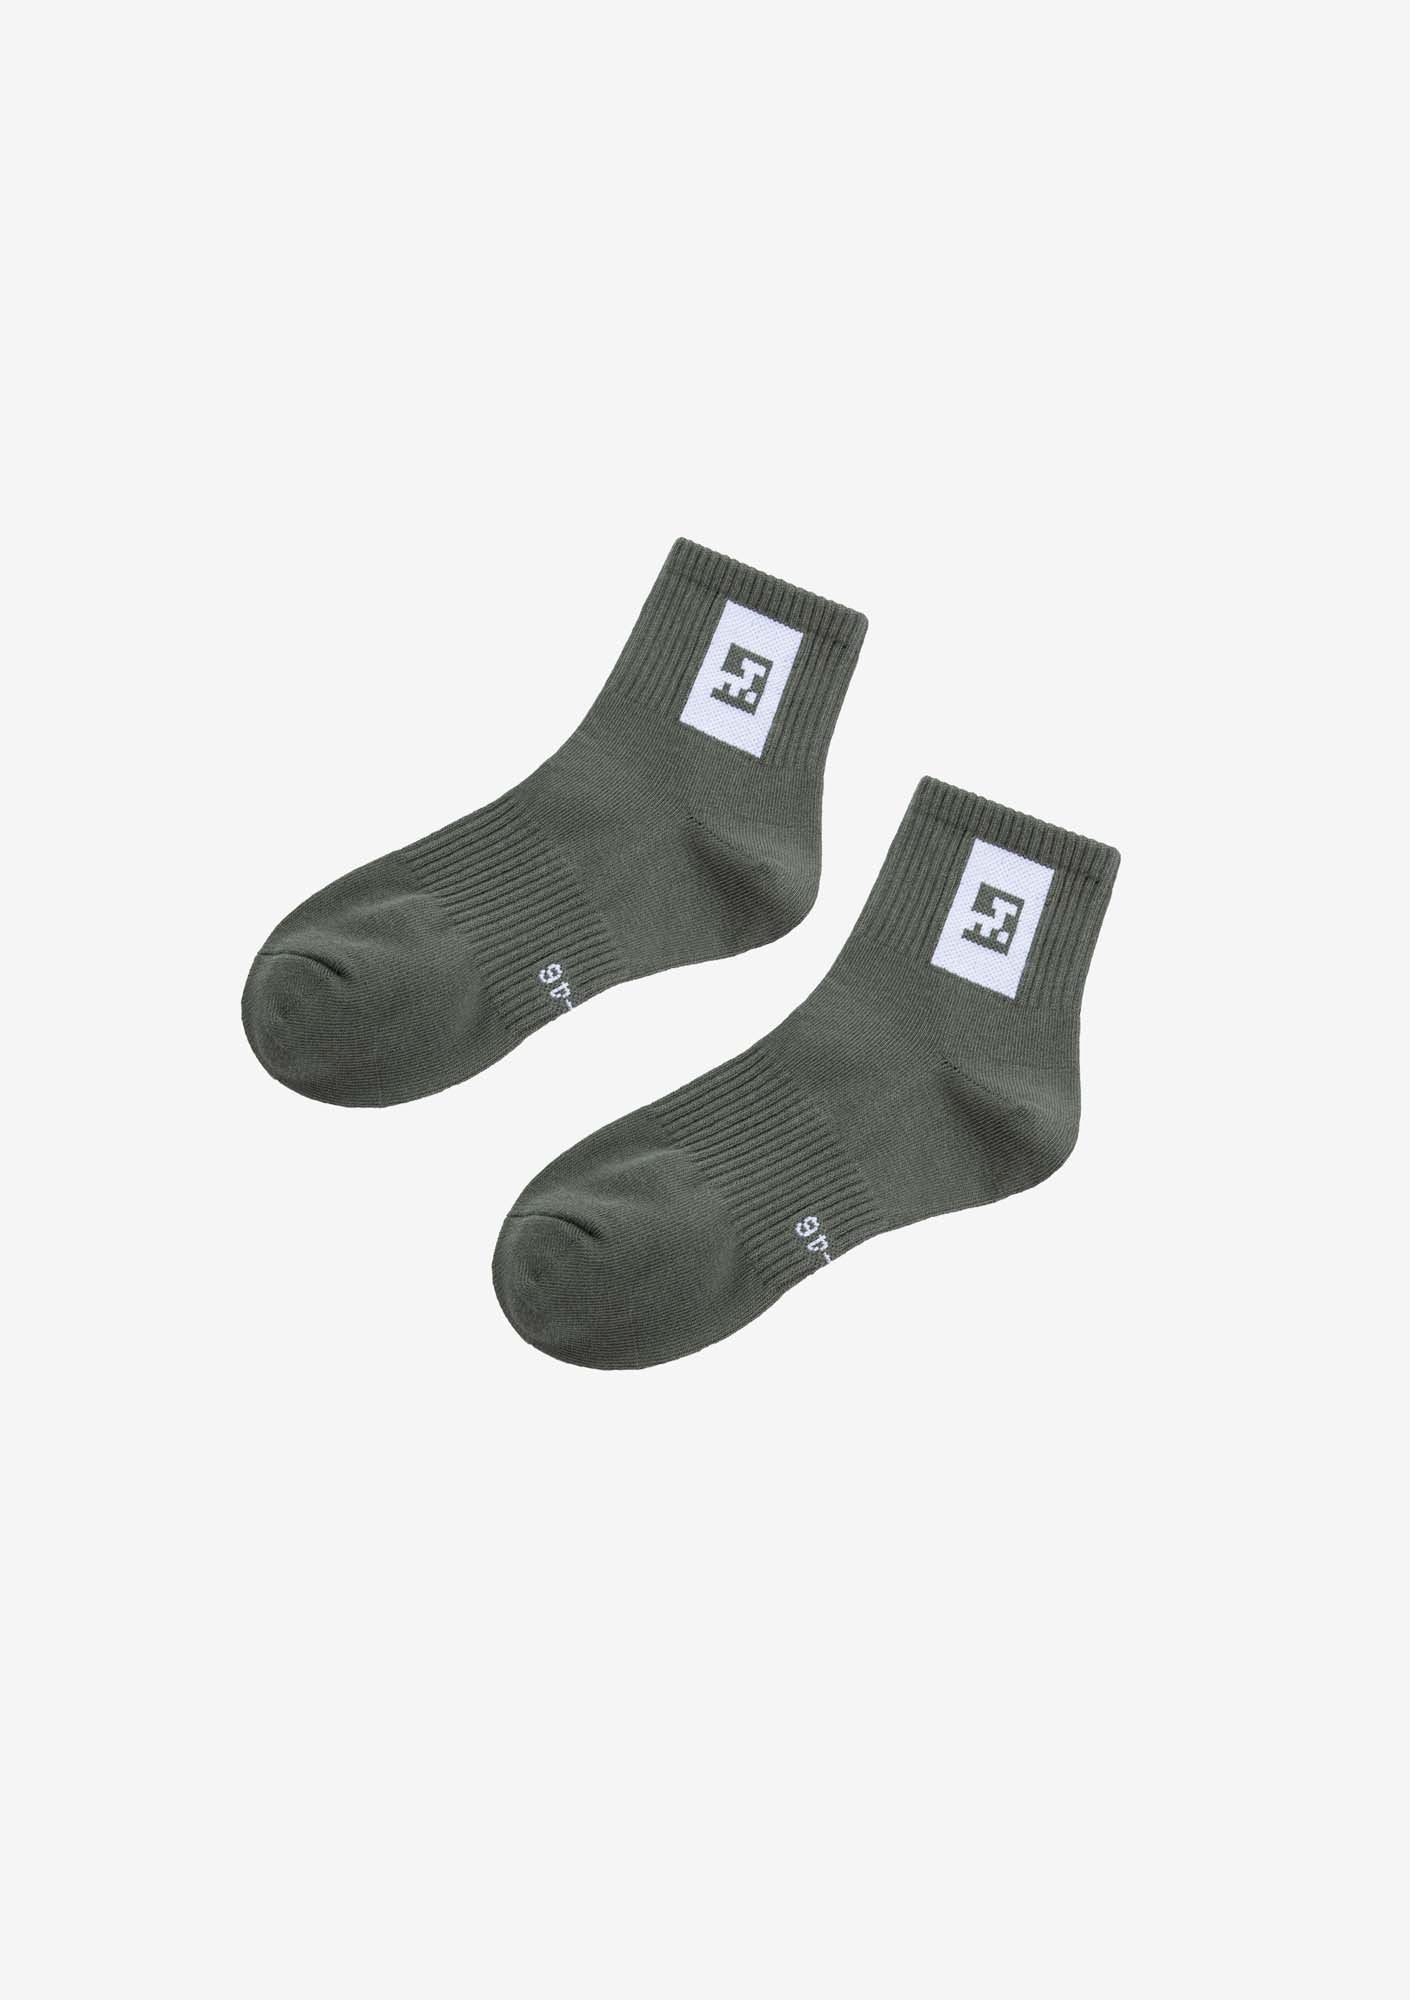 Носки Ankle Hu50-113 (З пары)